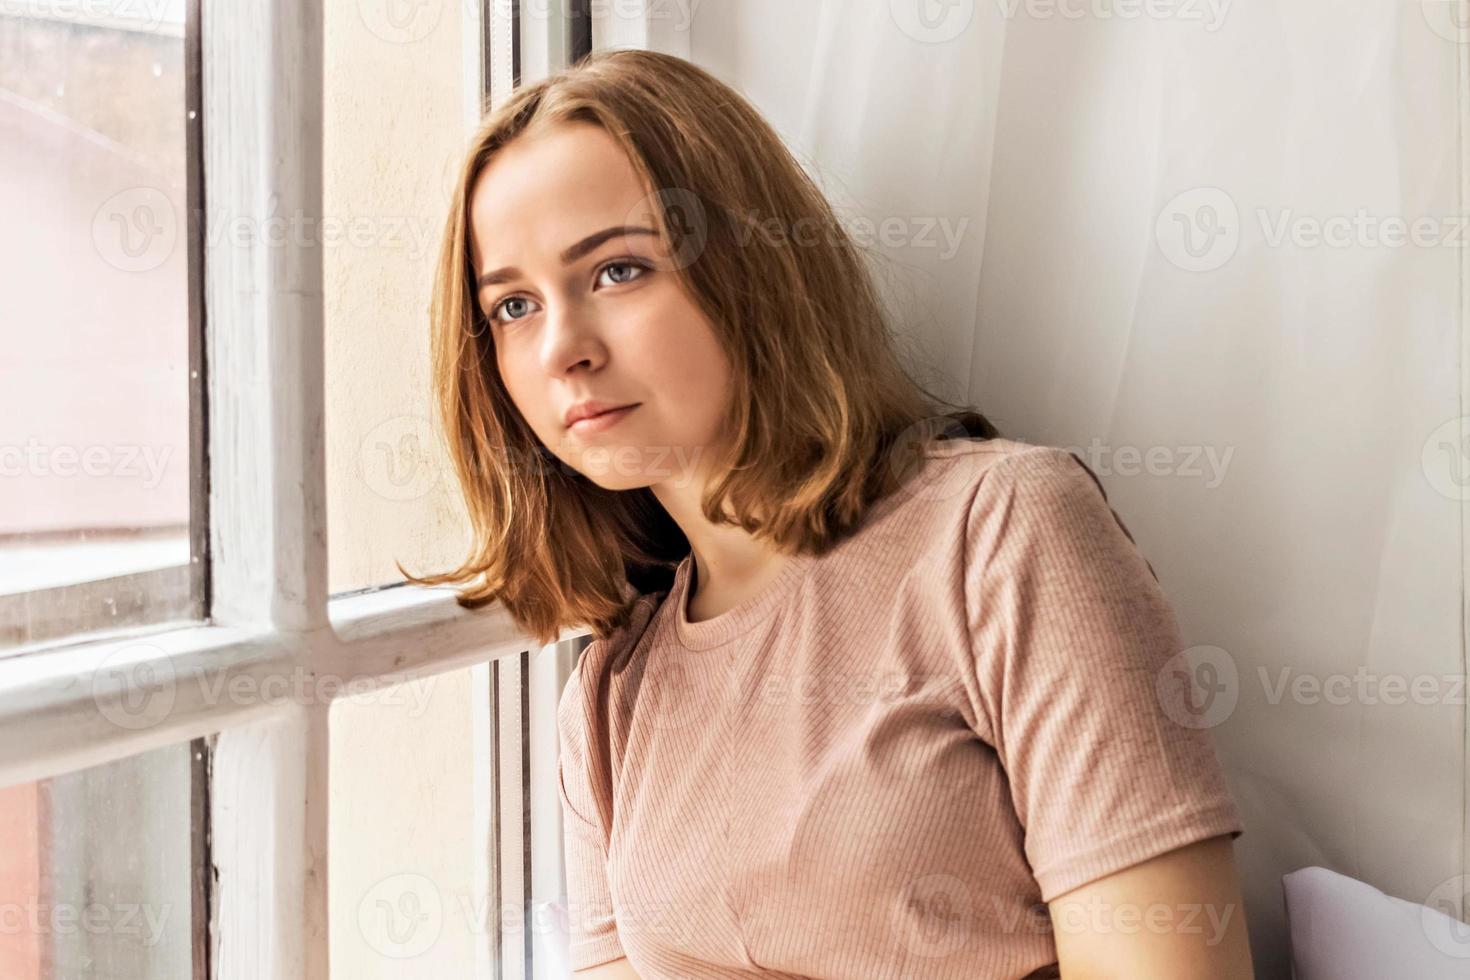 pensativa hermosa joven sentada en un alféizar cerca de la ventana.Retrato de un adolescente solo en casa.Concepto de personas, estilo de vida, ocio y relajación. foto